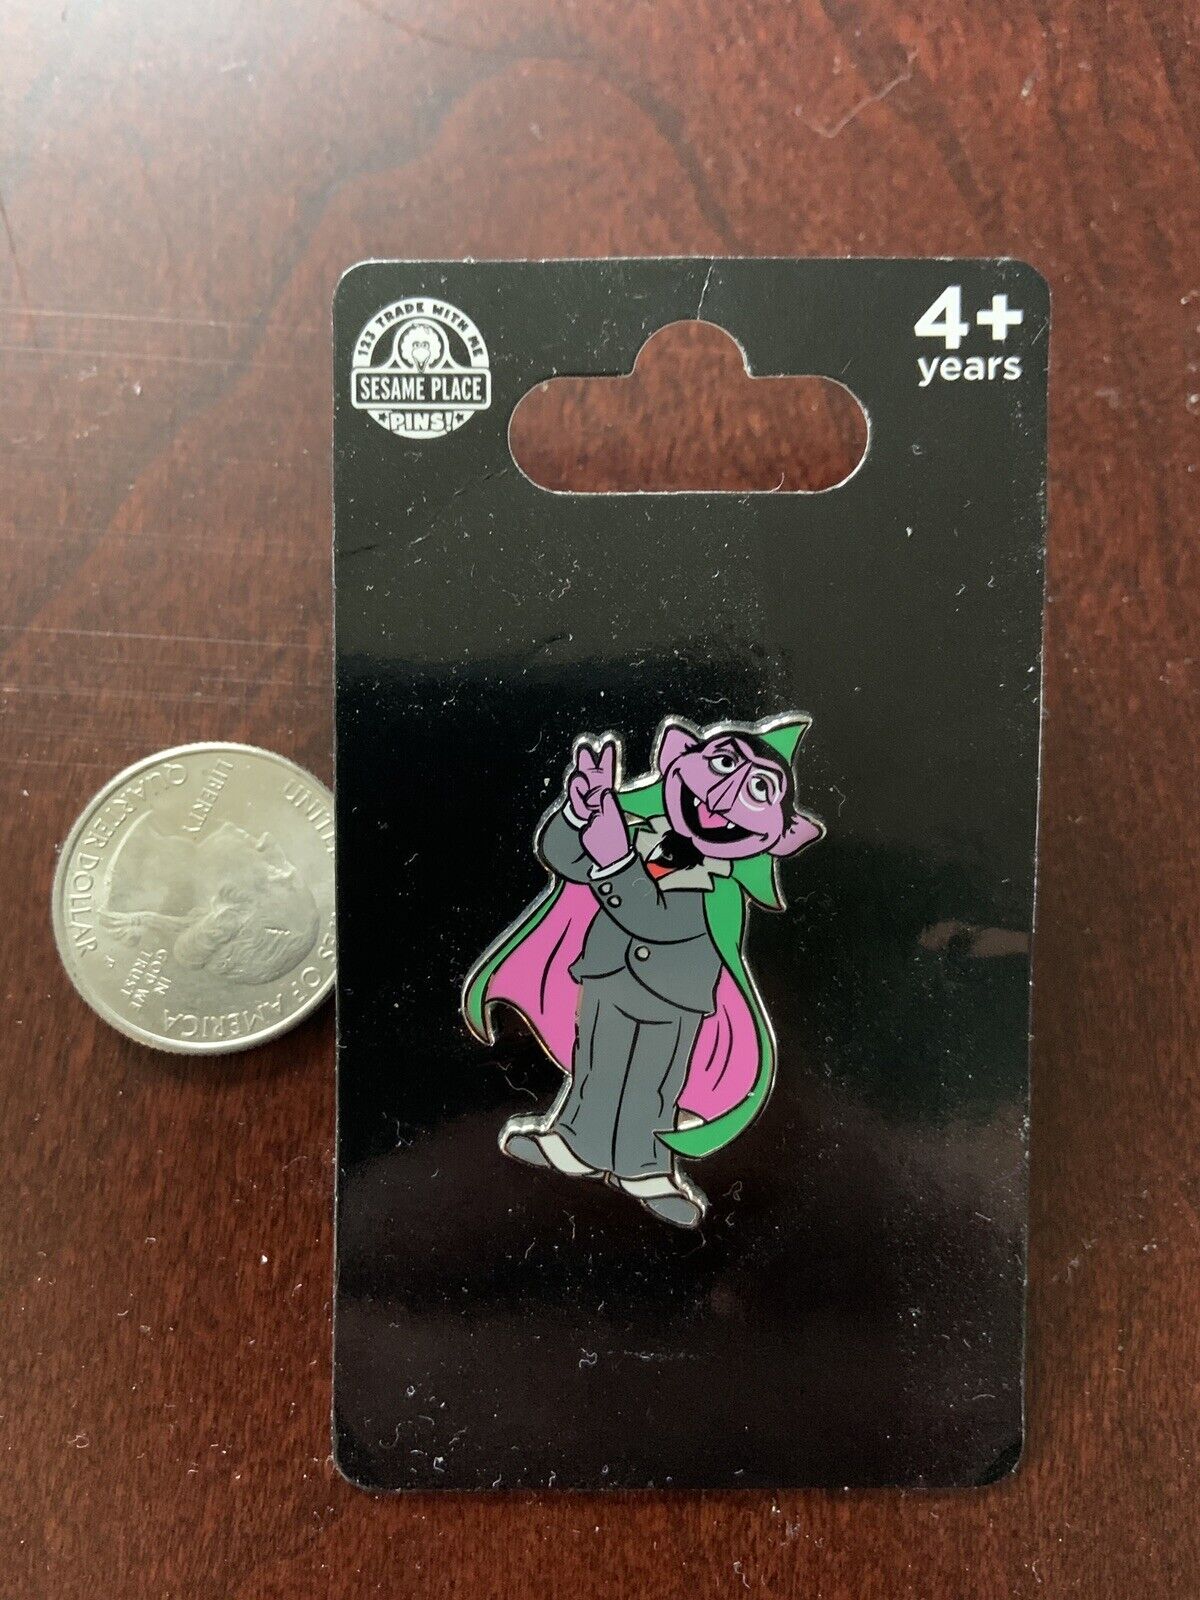 Sesame Street Pin Count Von Count